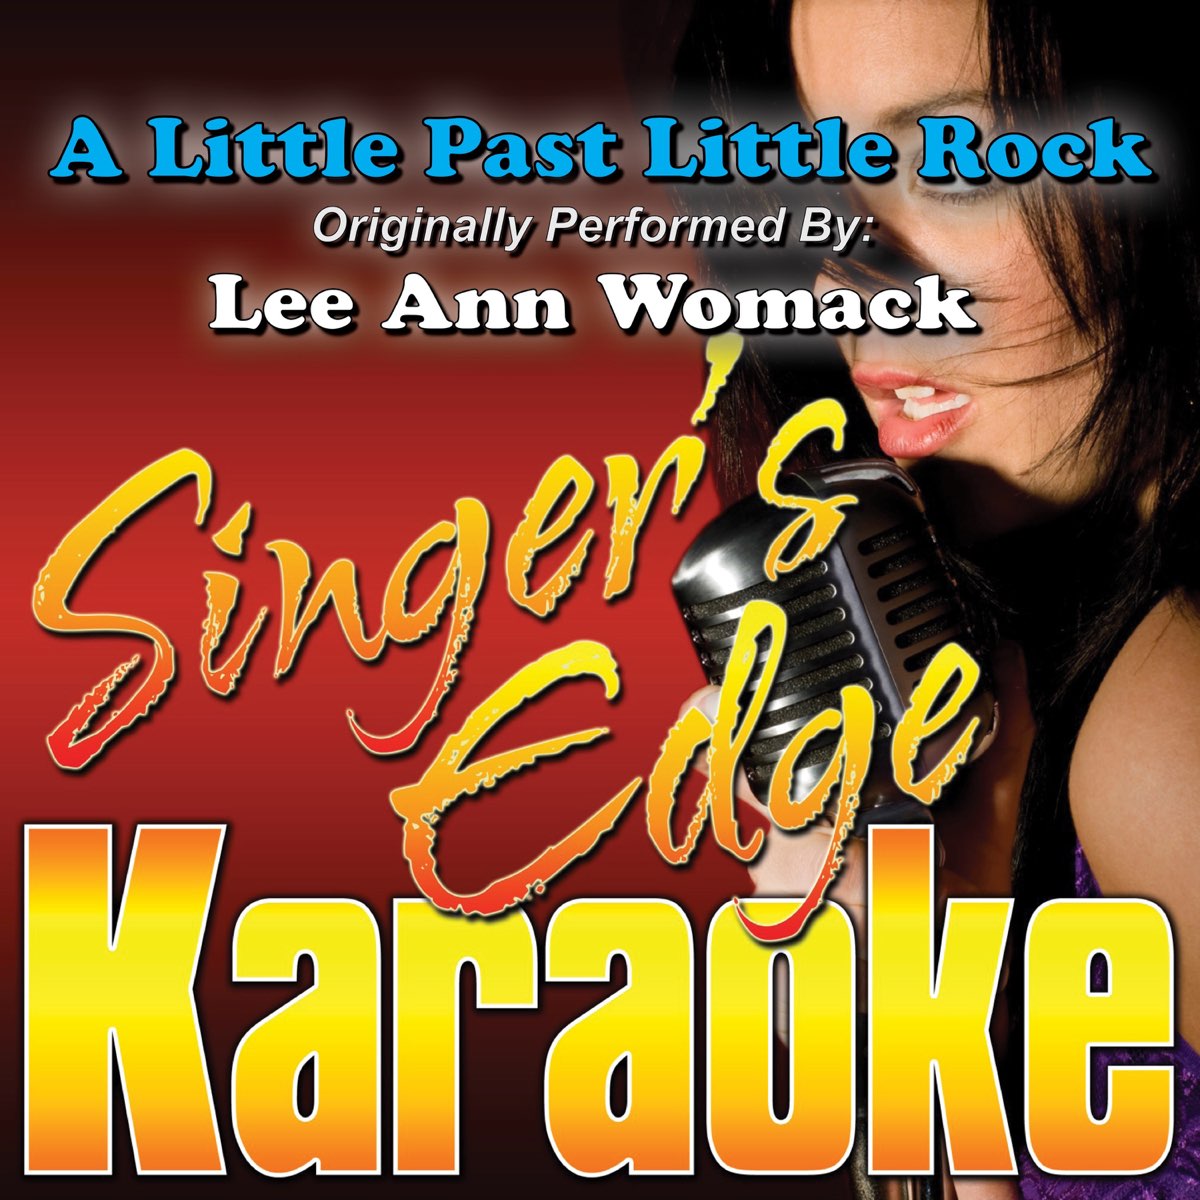 A Little Past Little Rock (Originally Performed By Lee Ann Womack) [Karaoke  Version] - Single by Singer's Edge Karaoke on Apple Music